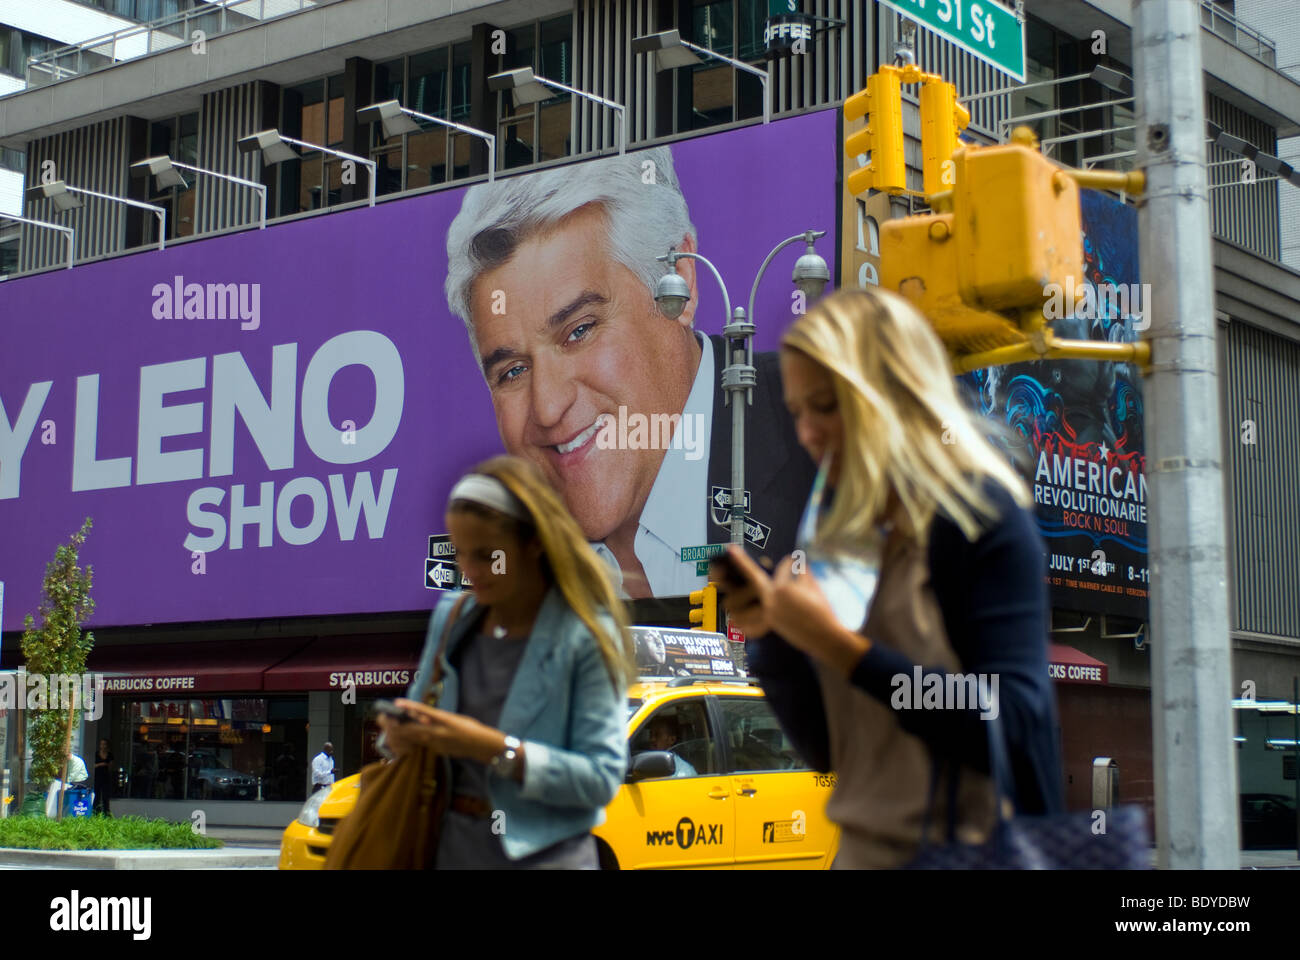 Werbung für die NBC-TV-Programm The Jay Leno Show auf einer Plakatwand am Times Square in New York Stockfoto